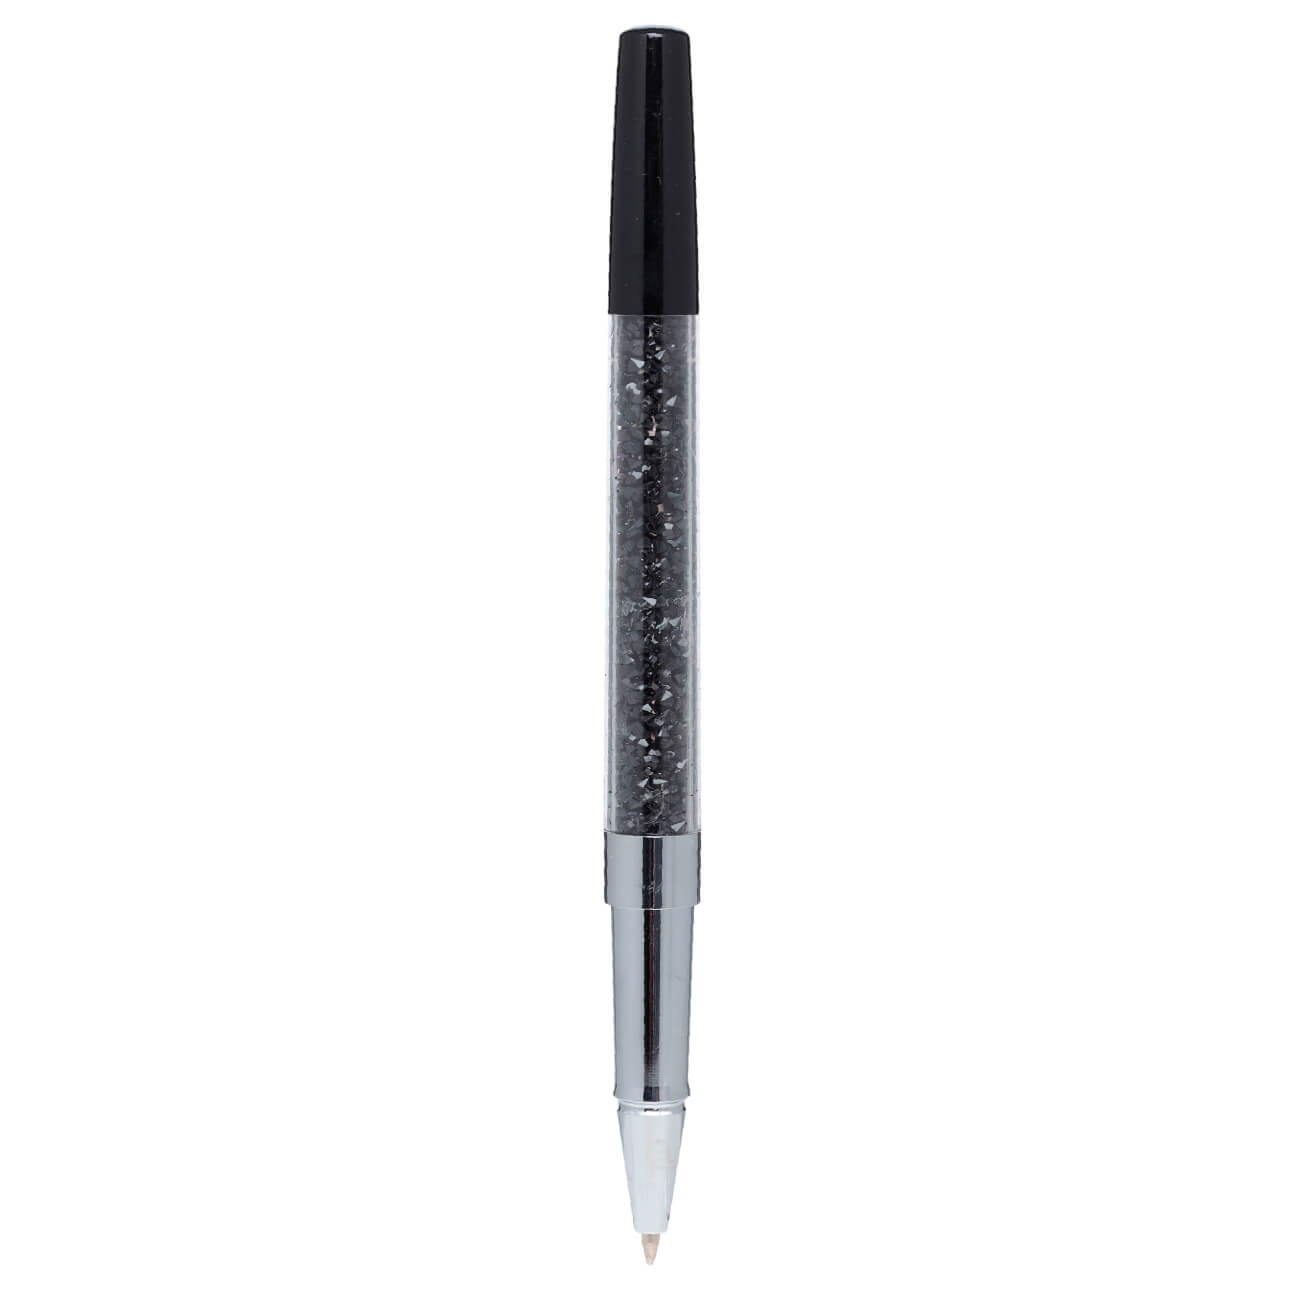 Ручка гелевая, 15 см, сталь, черная, Кристаллы, Draw cristal изображение № 1